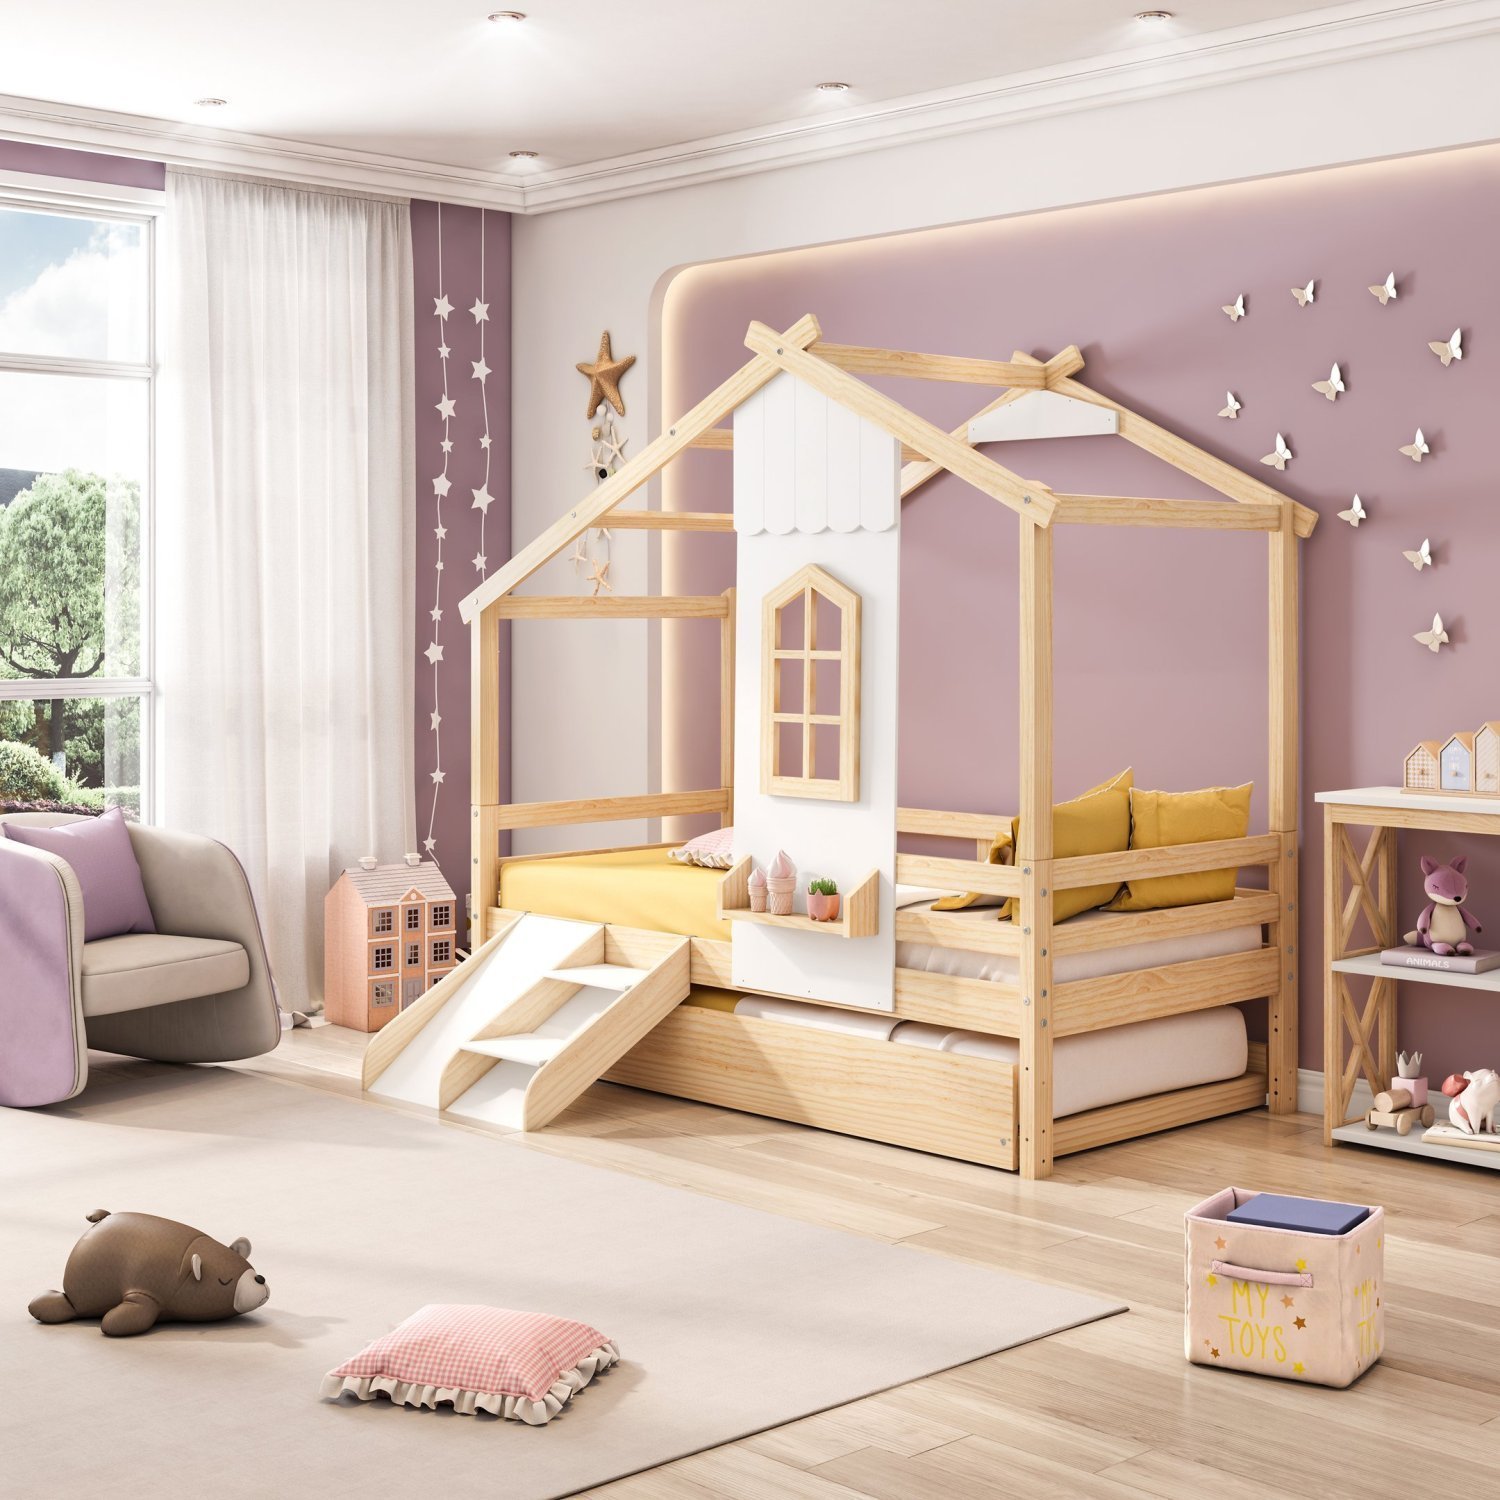 Bicama Infantil Prime House com Mini Escorregador e Telhado V Casatema - 6